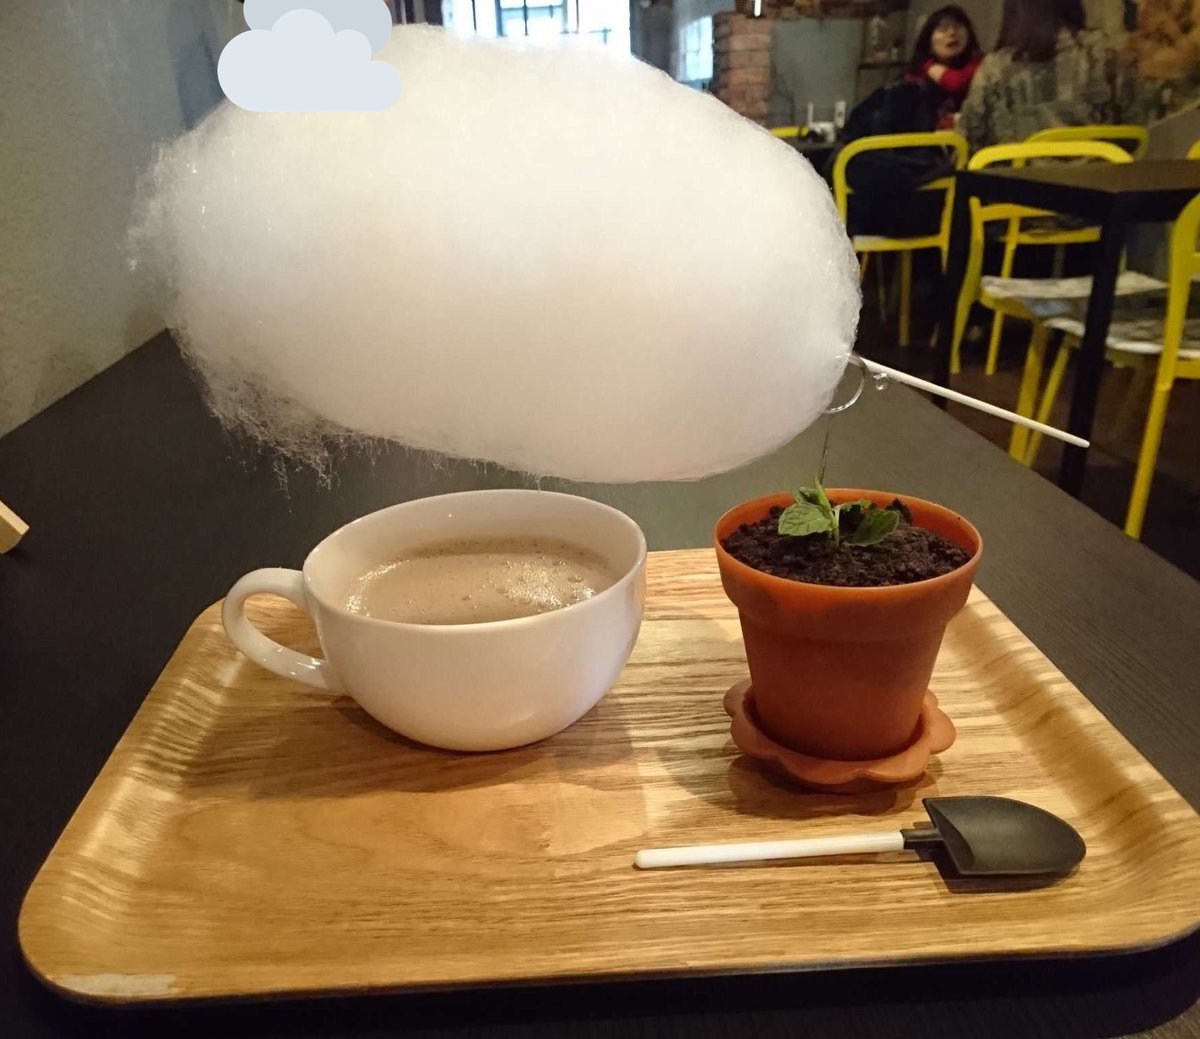 Uzivatel ライマー烏丸 Na Twitteru 二条城からスグのお店アルファ フード ドリンクさんの雲下コーヒーです コーヒーの上に綿菓子がありコーヒーの熱で溶けてまるで雲の切れ目の様です 鉢植デザートも美味しくいただけました 雲下コーヒー 雲の下コーヒー